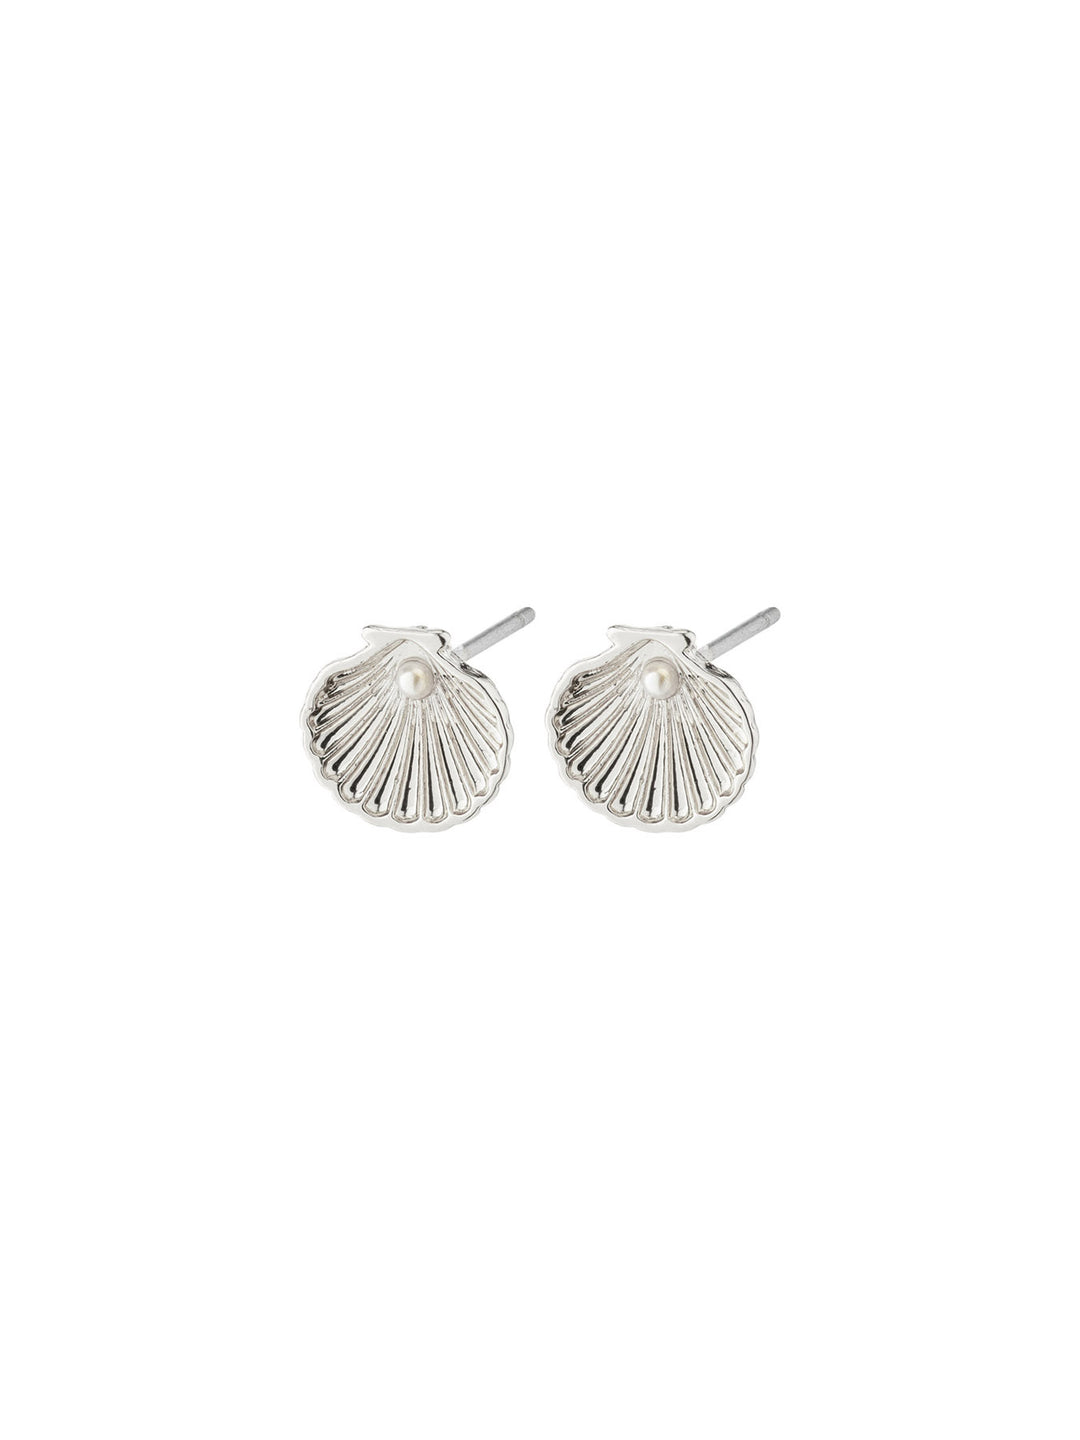 Opal Seashell Earrings by Pilgrim